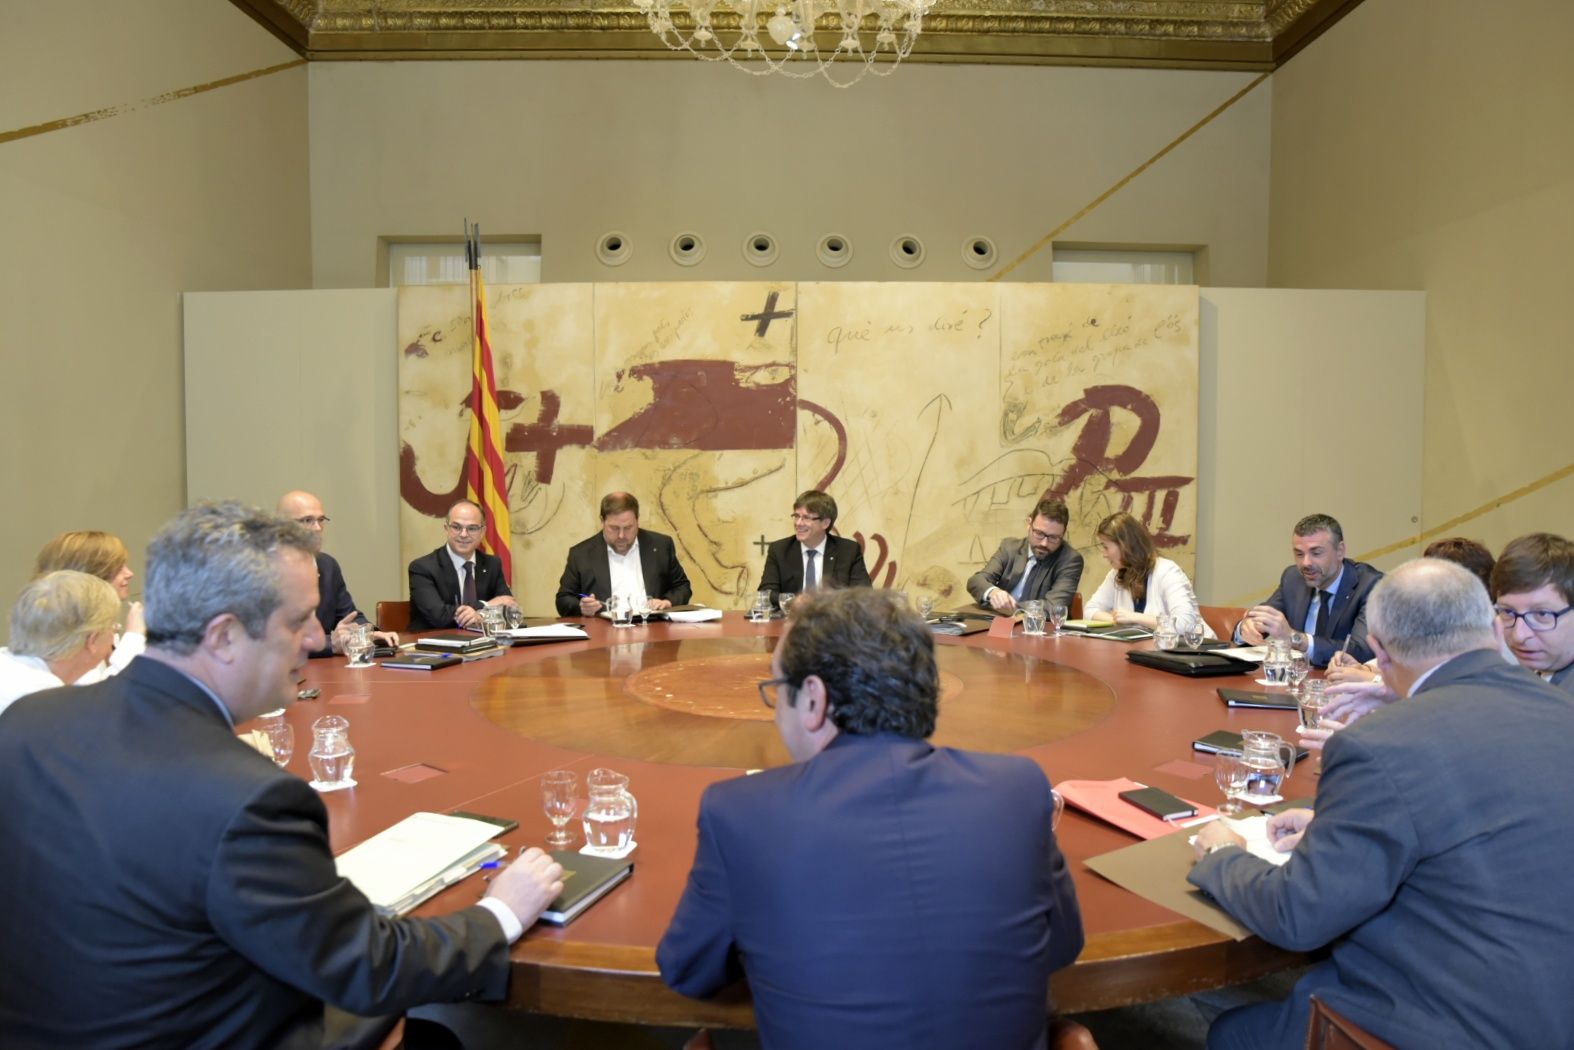 El Govern denuncia “l’ús abusiu” dels recursos al TC per part de Rajoy